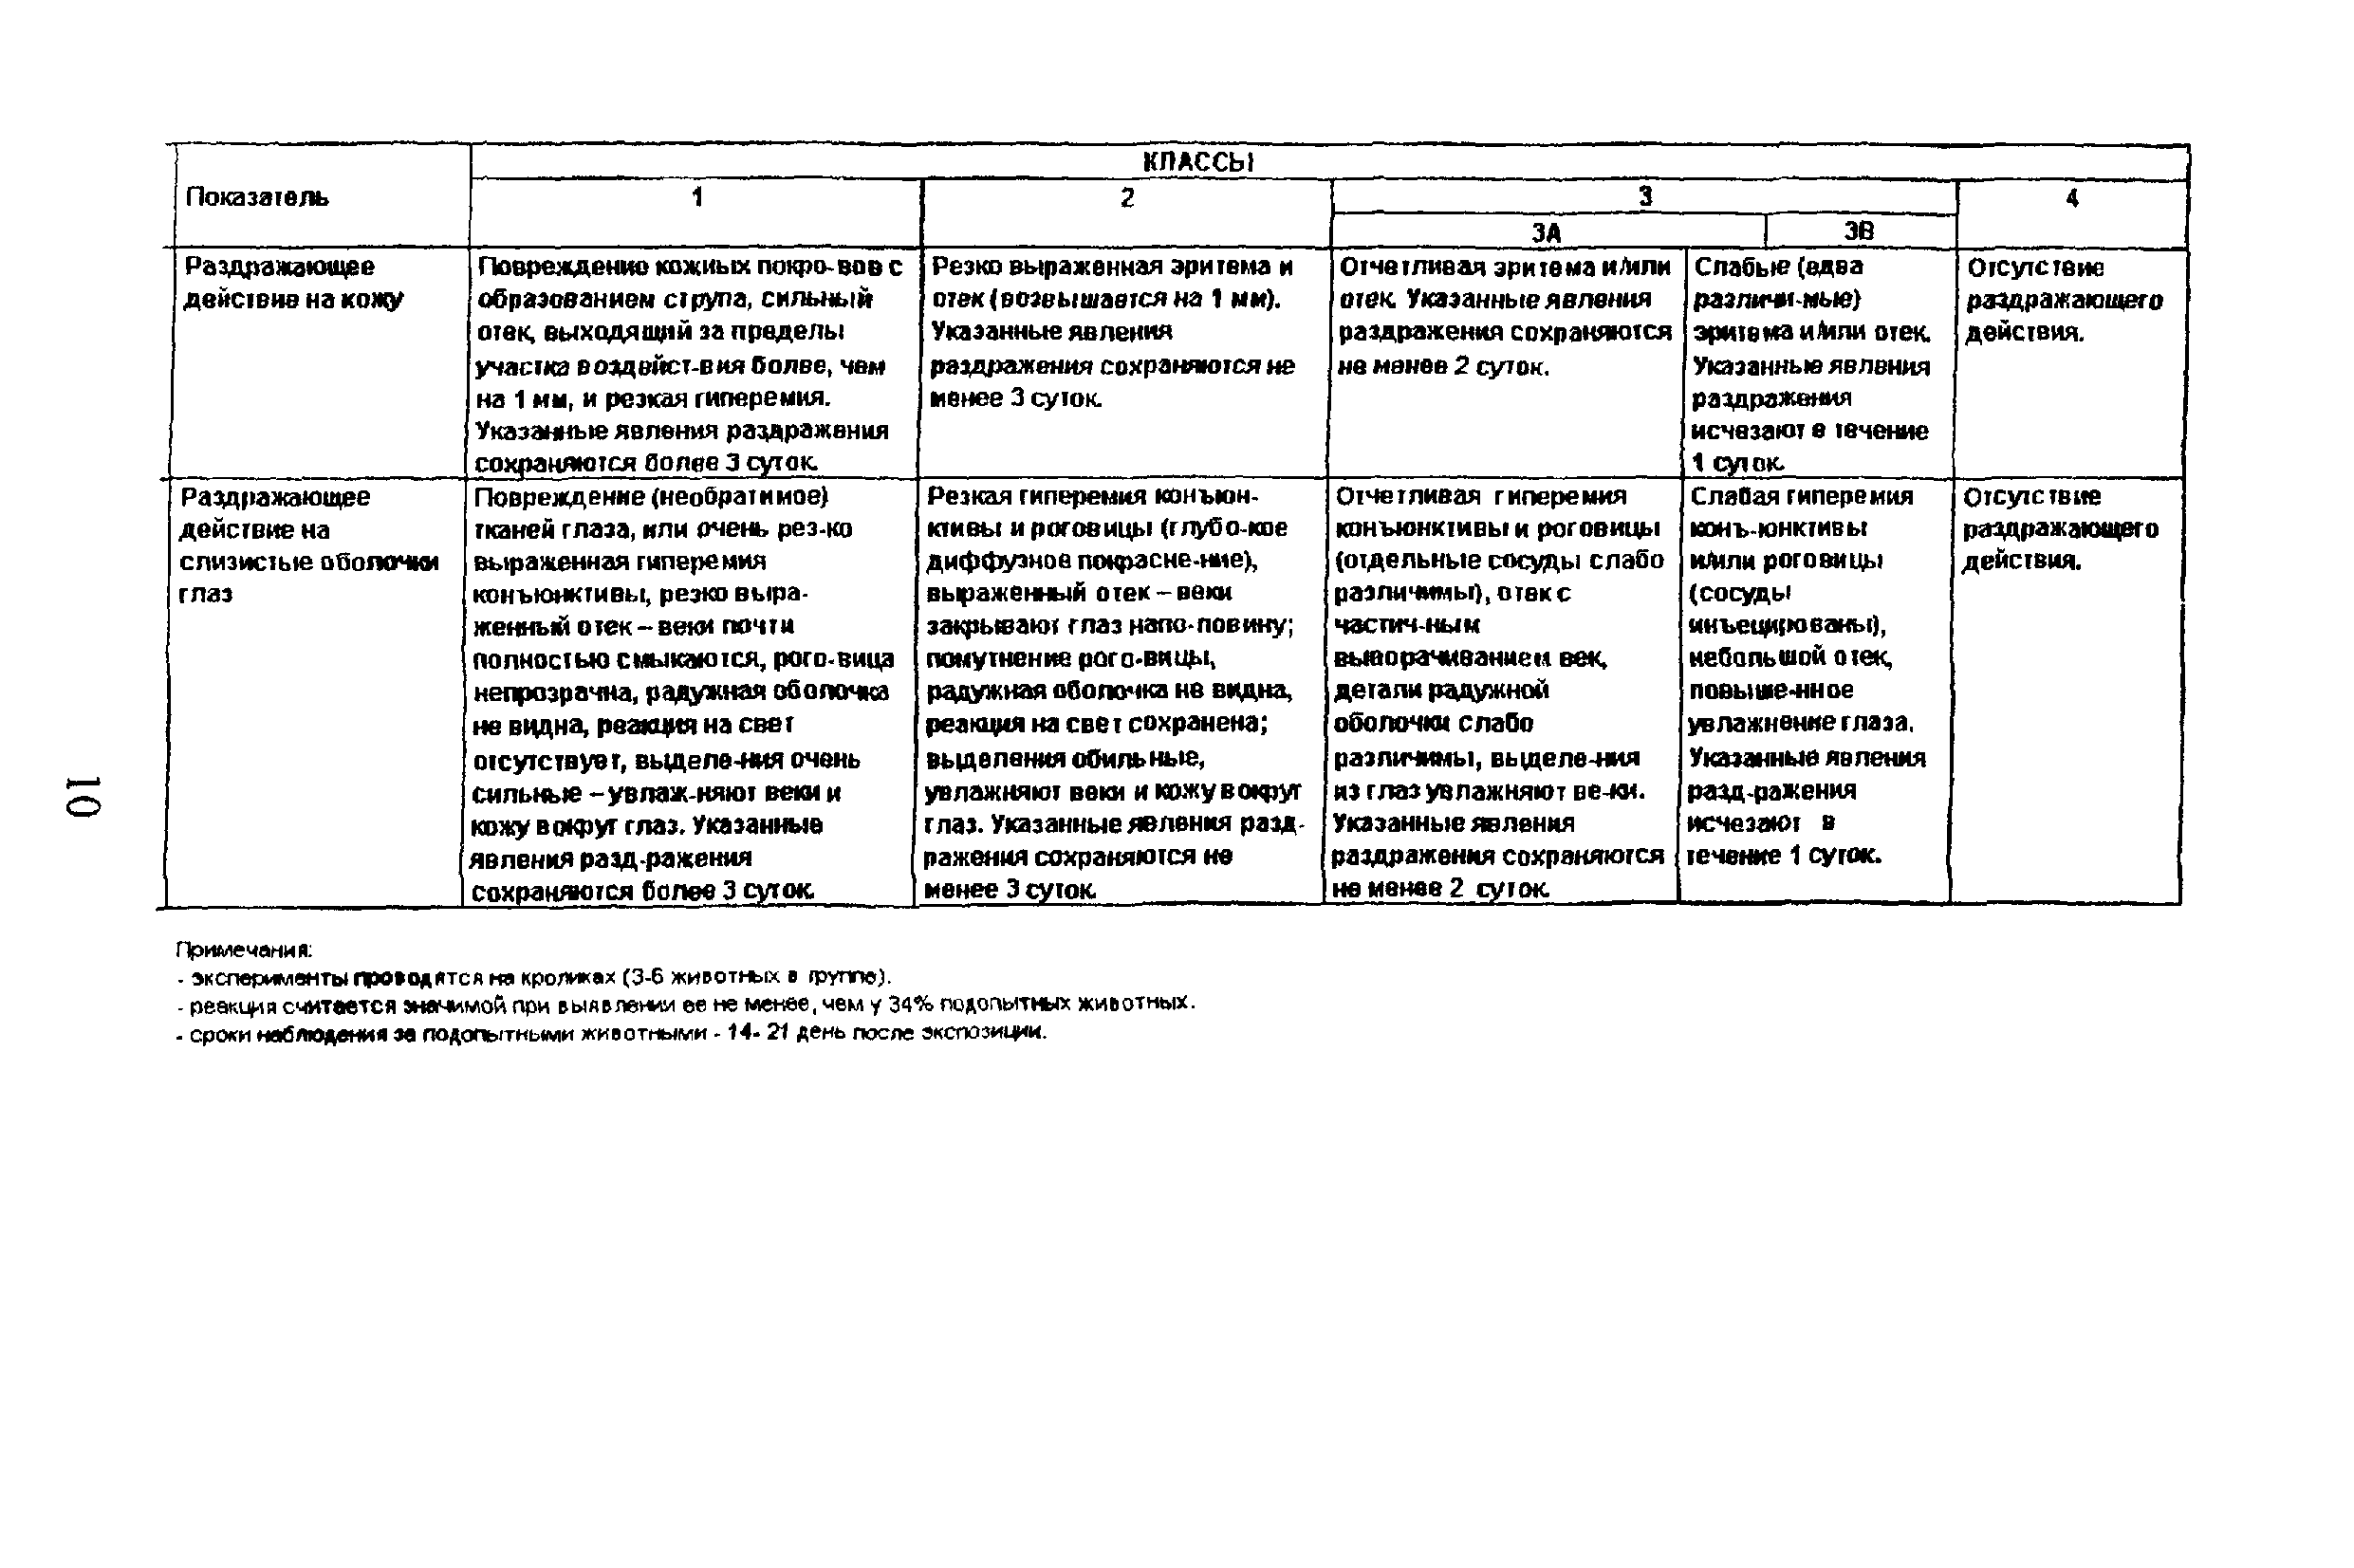 Методические рекомендации 2001/26